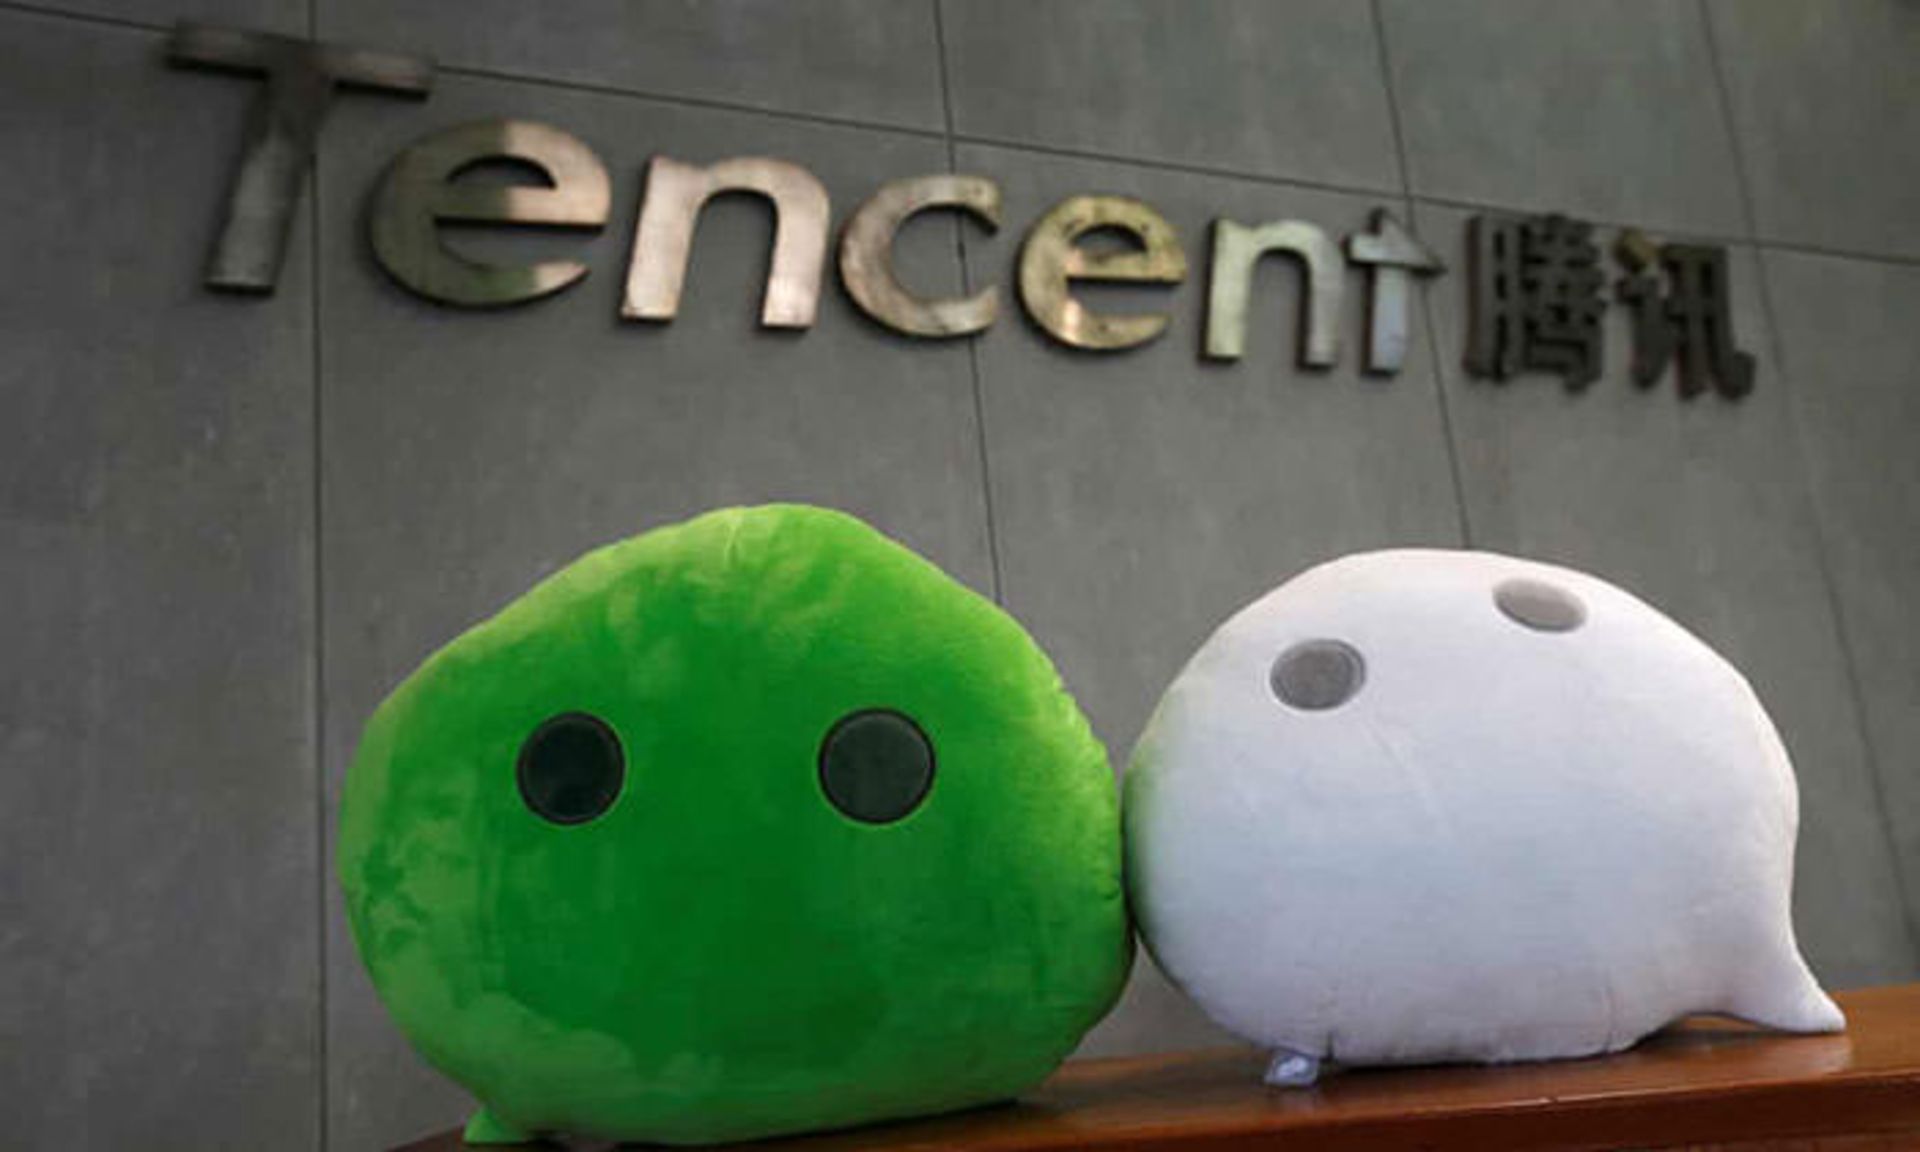 مرجع متخصصين ايران تنسنت / Tencent